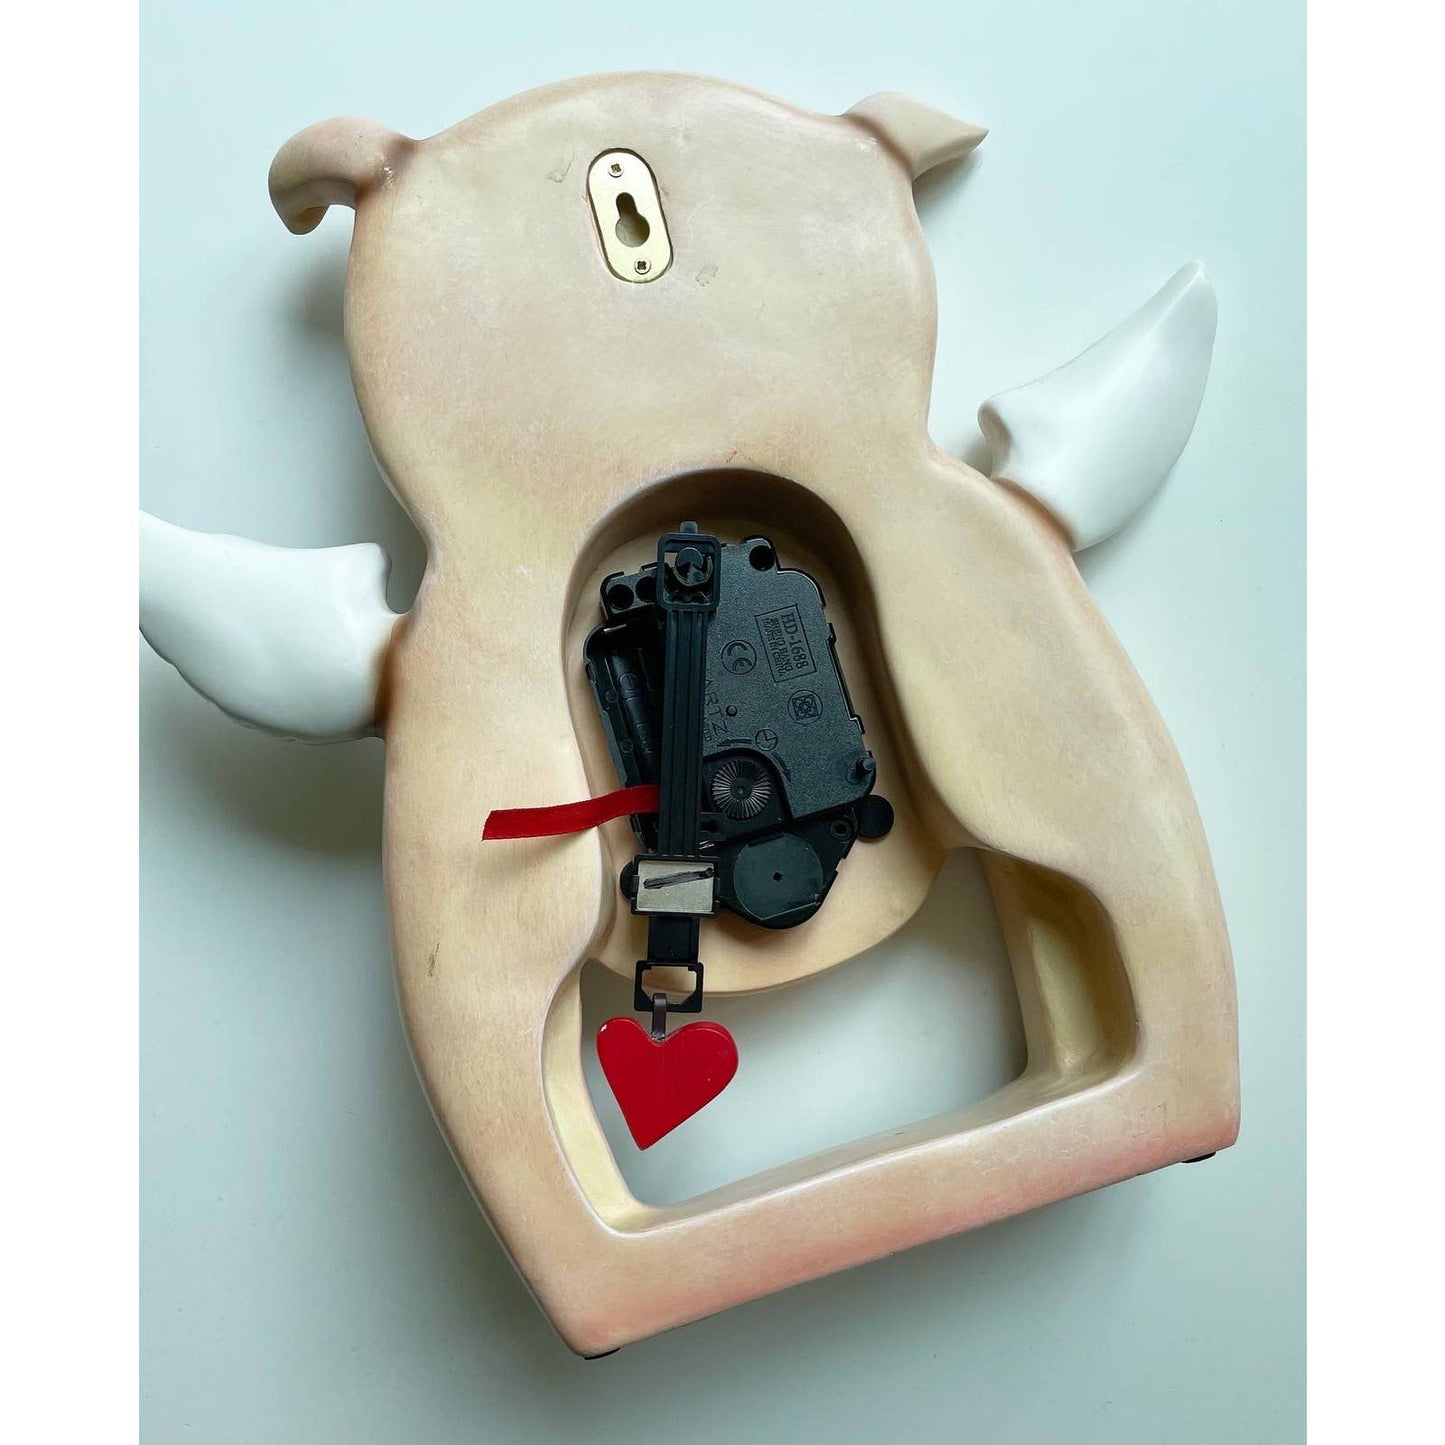 Allen Designs Little Flying Pig Piggy Pendulum Novelty Wall Clock